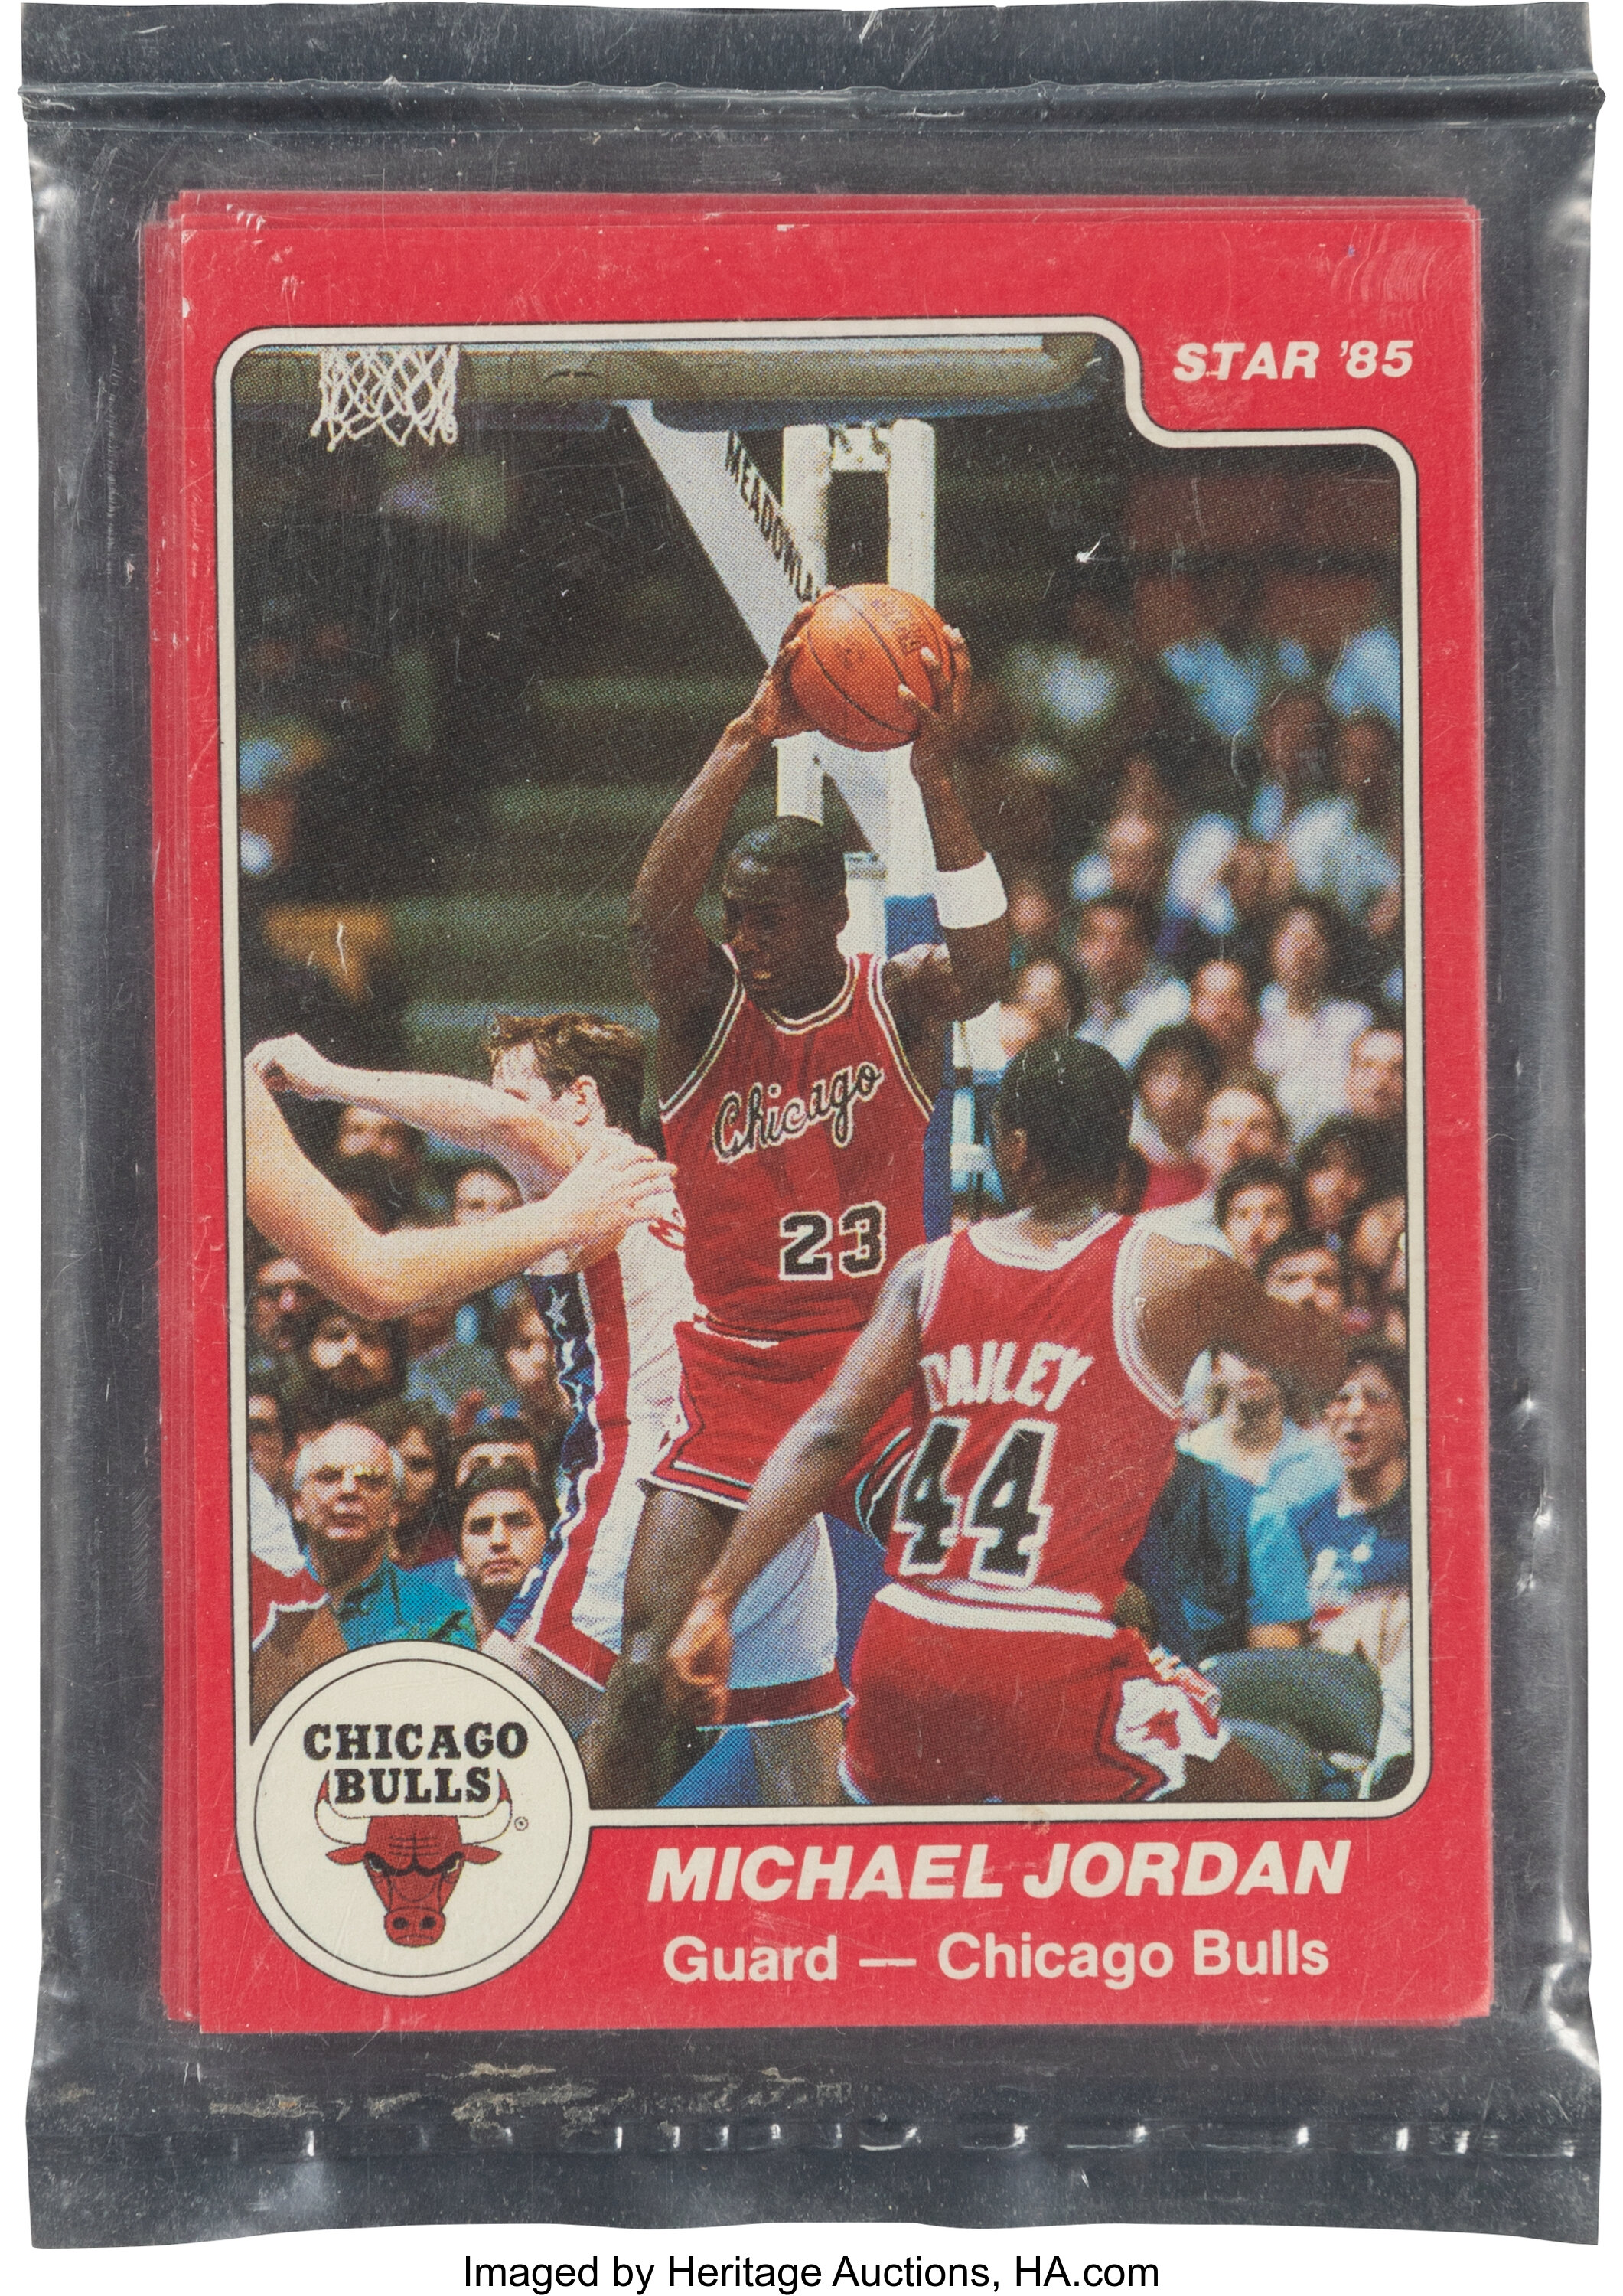 The “True” Michael Jordan Rookie Card, by Javad